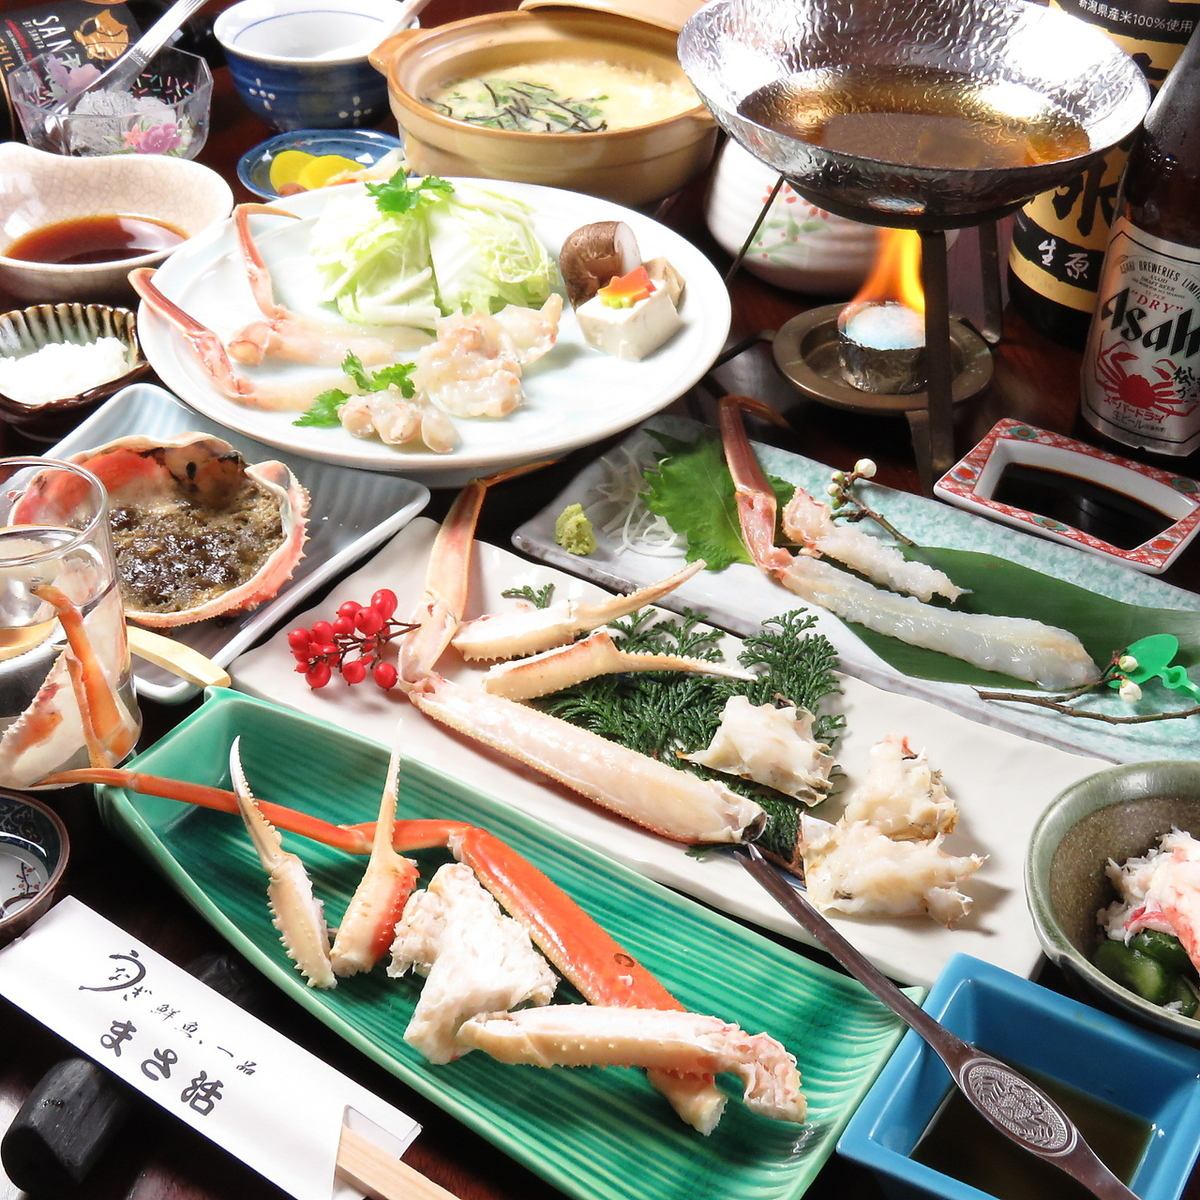 请享用店主每天从拍卖会上购买的最优质的螃蟹和其他海鲜制成的特色菜肴。